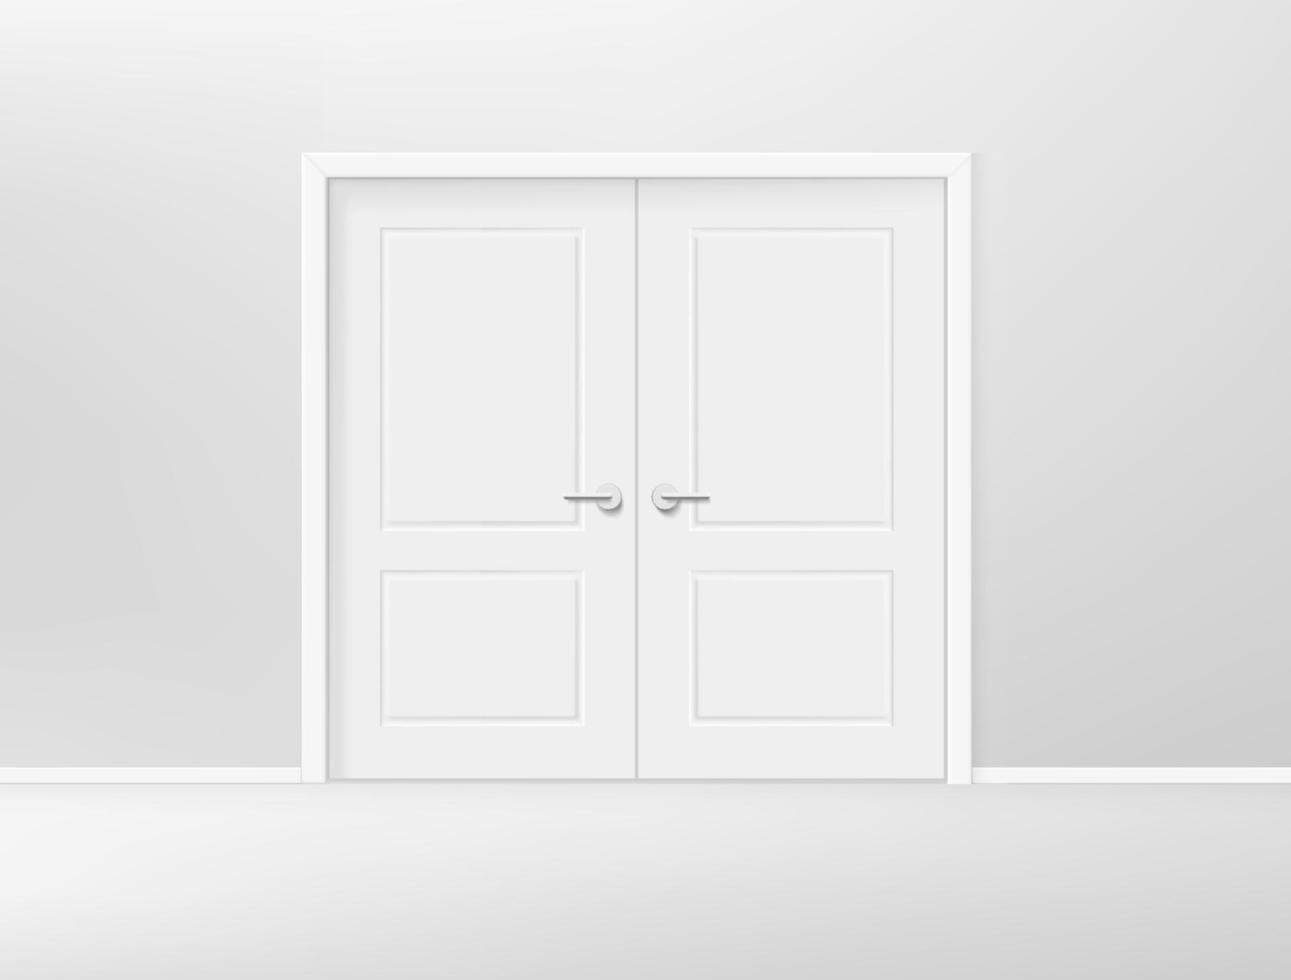 Entrada con doble puerta en pasillo. Ilustración de vector de estilo 3d realista